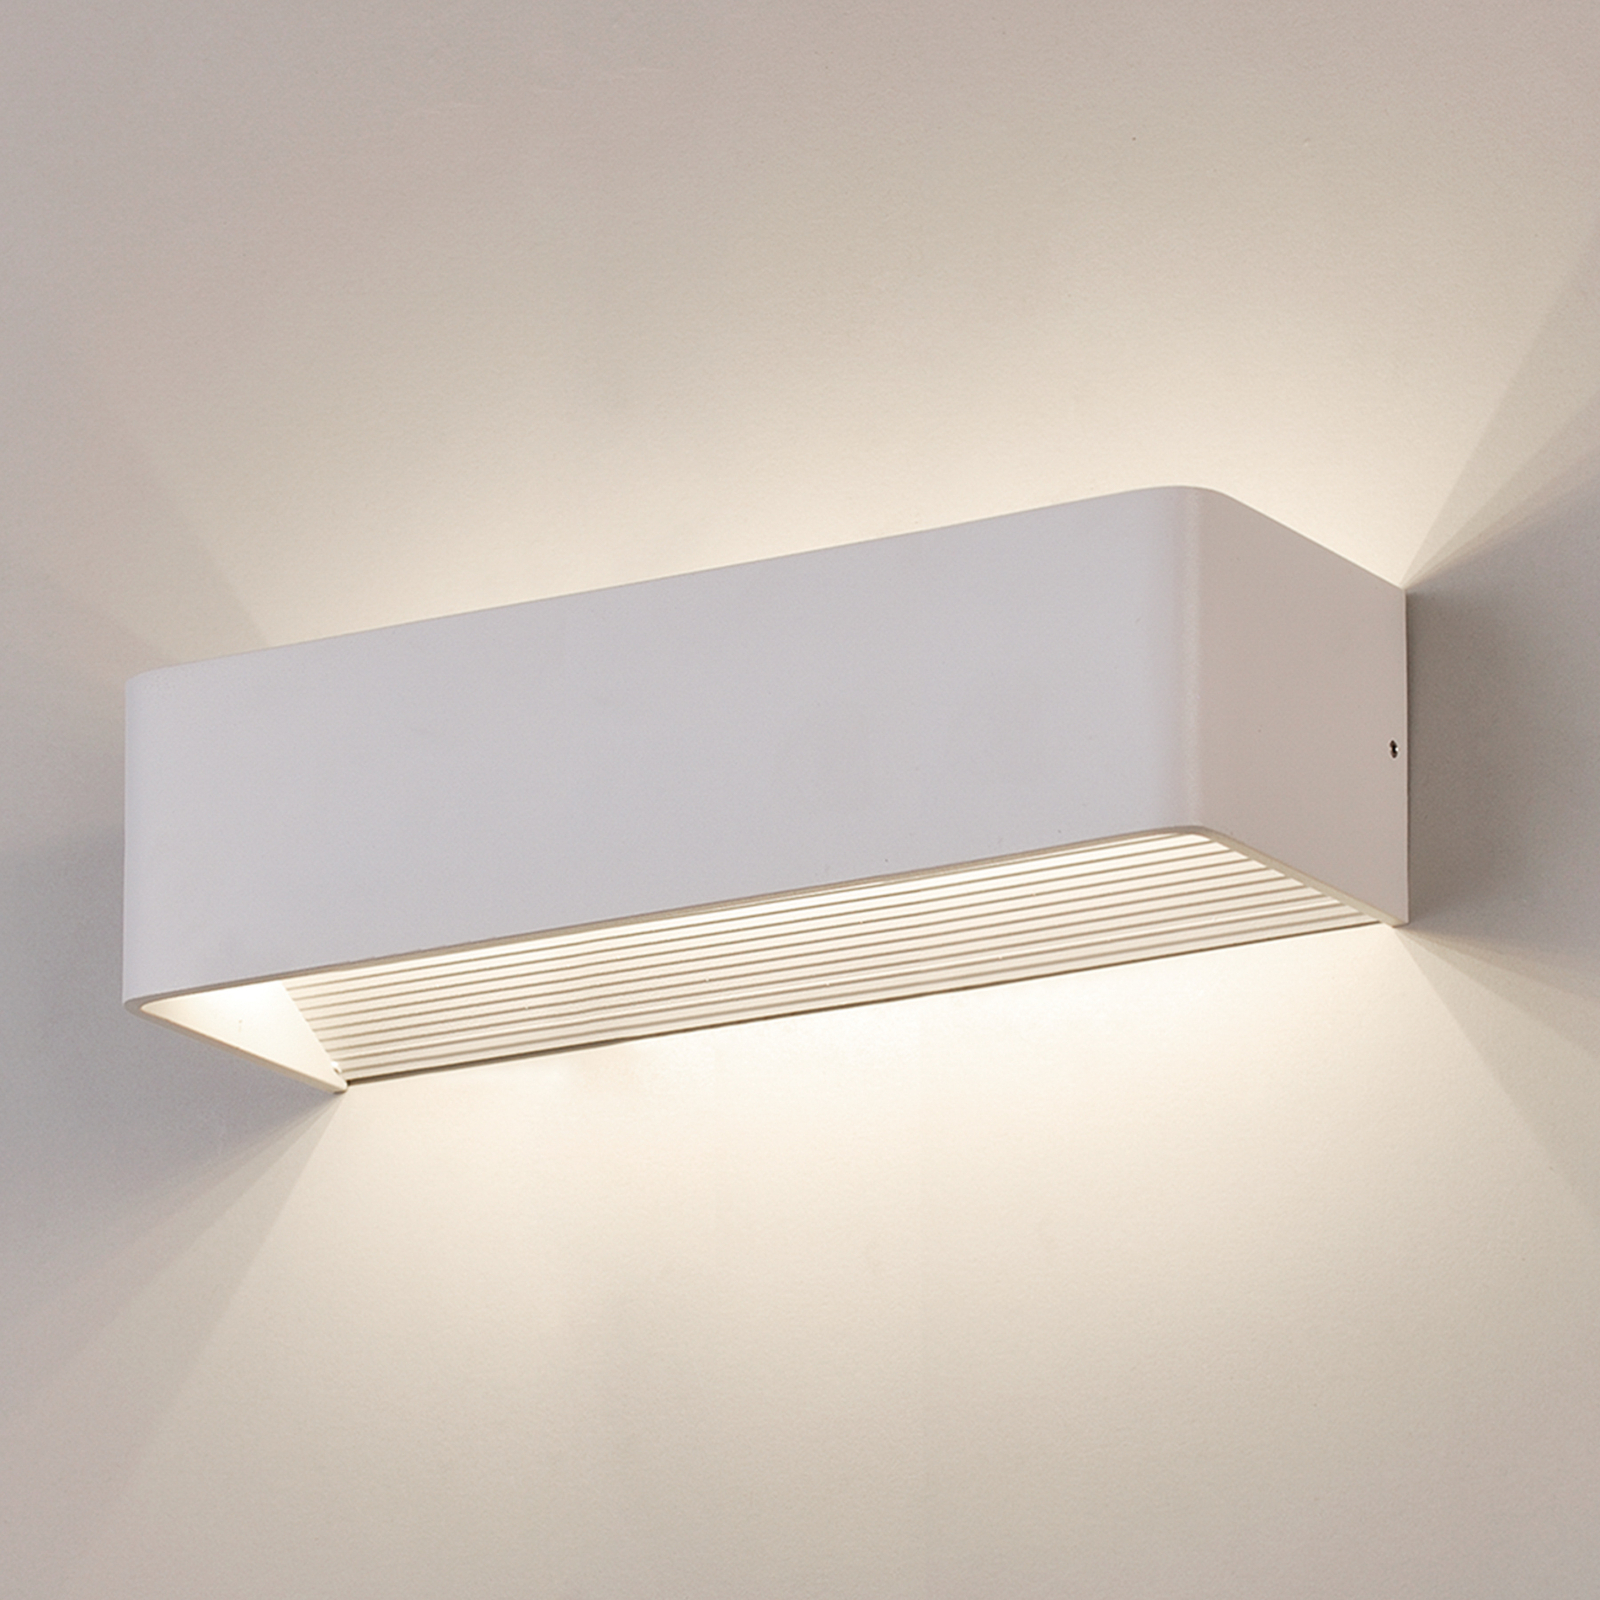 Stenska svetilka Icon LED, bela, navzgor/navzdol, širina 37 cm